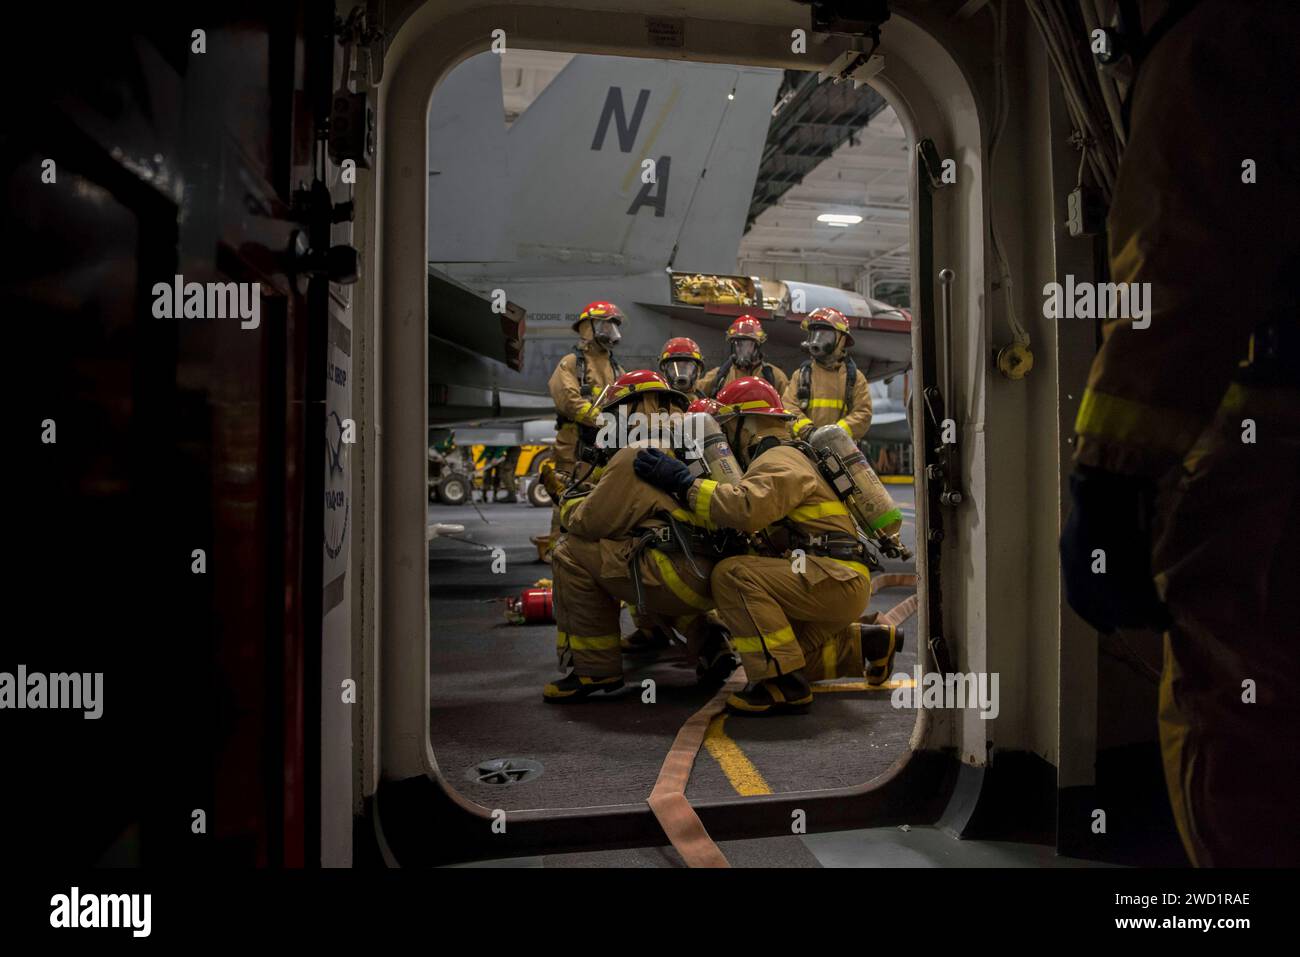 Seeleute führen während einer allgemeinen Übung in der Hangarbucht der USS Theodore Roosevelt Feuerlöschübungen durch. Stockfoto